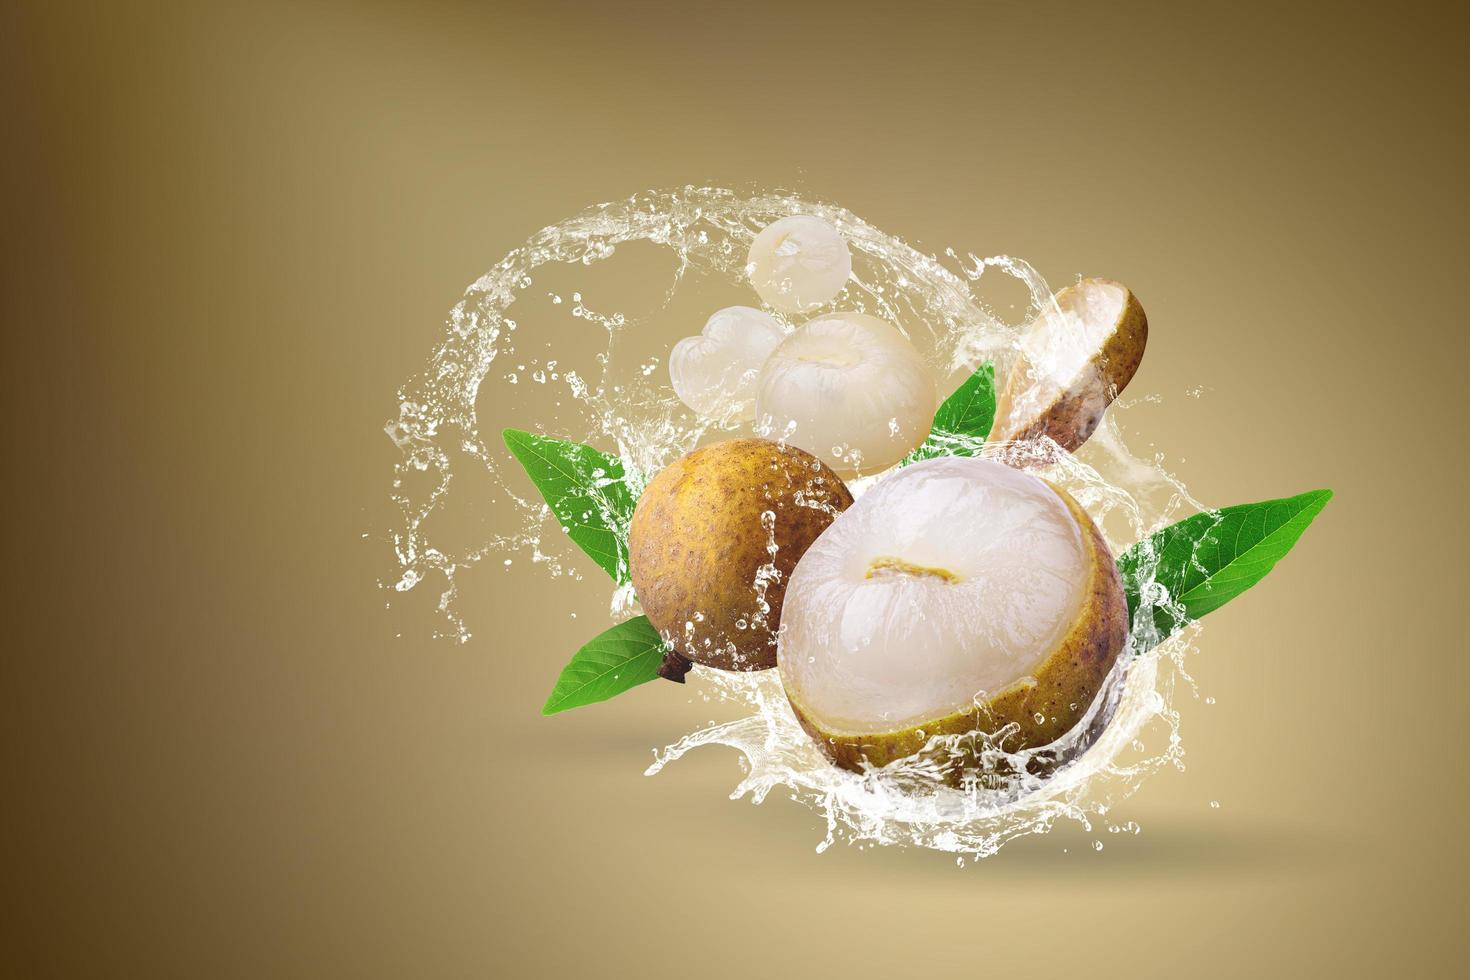 Water splashing on fresh longan fruit photo